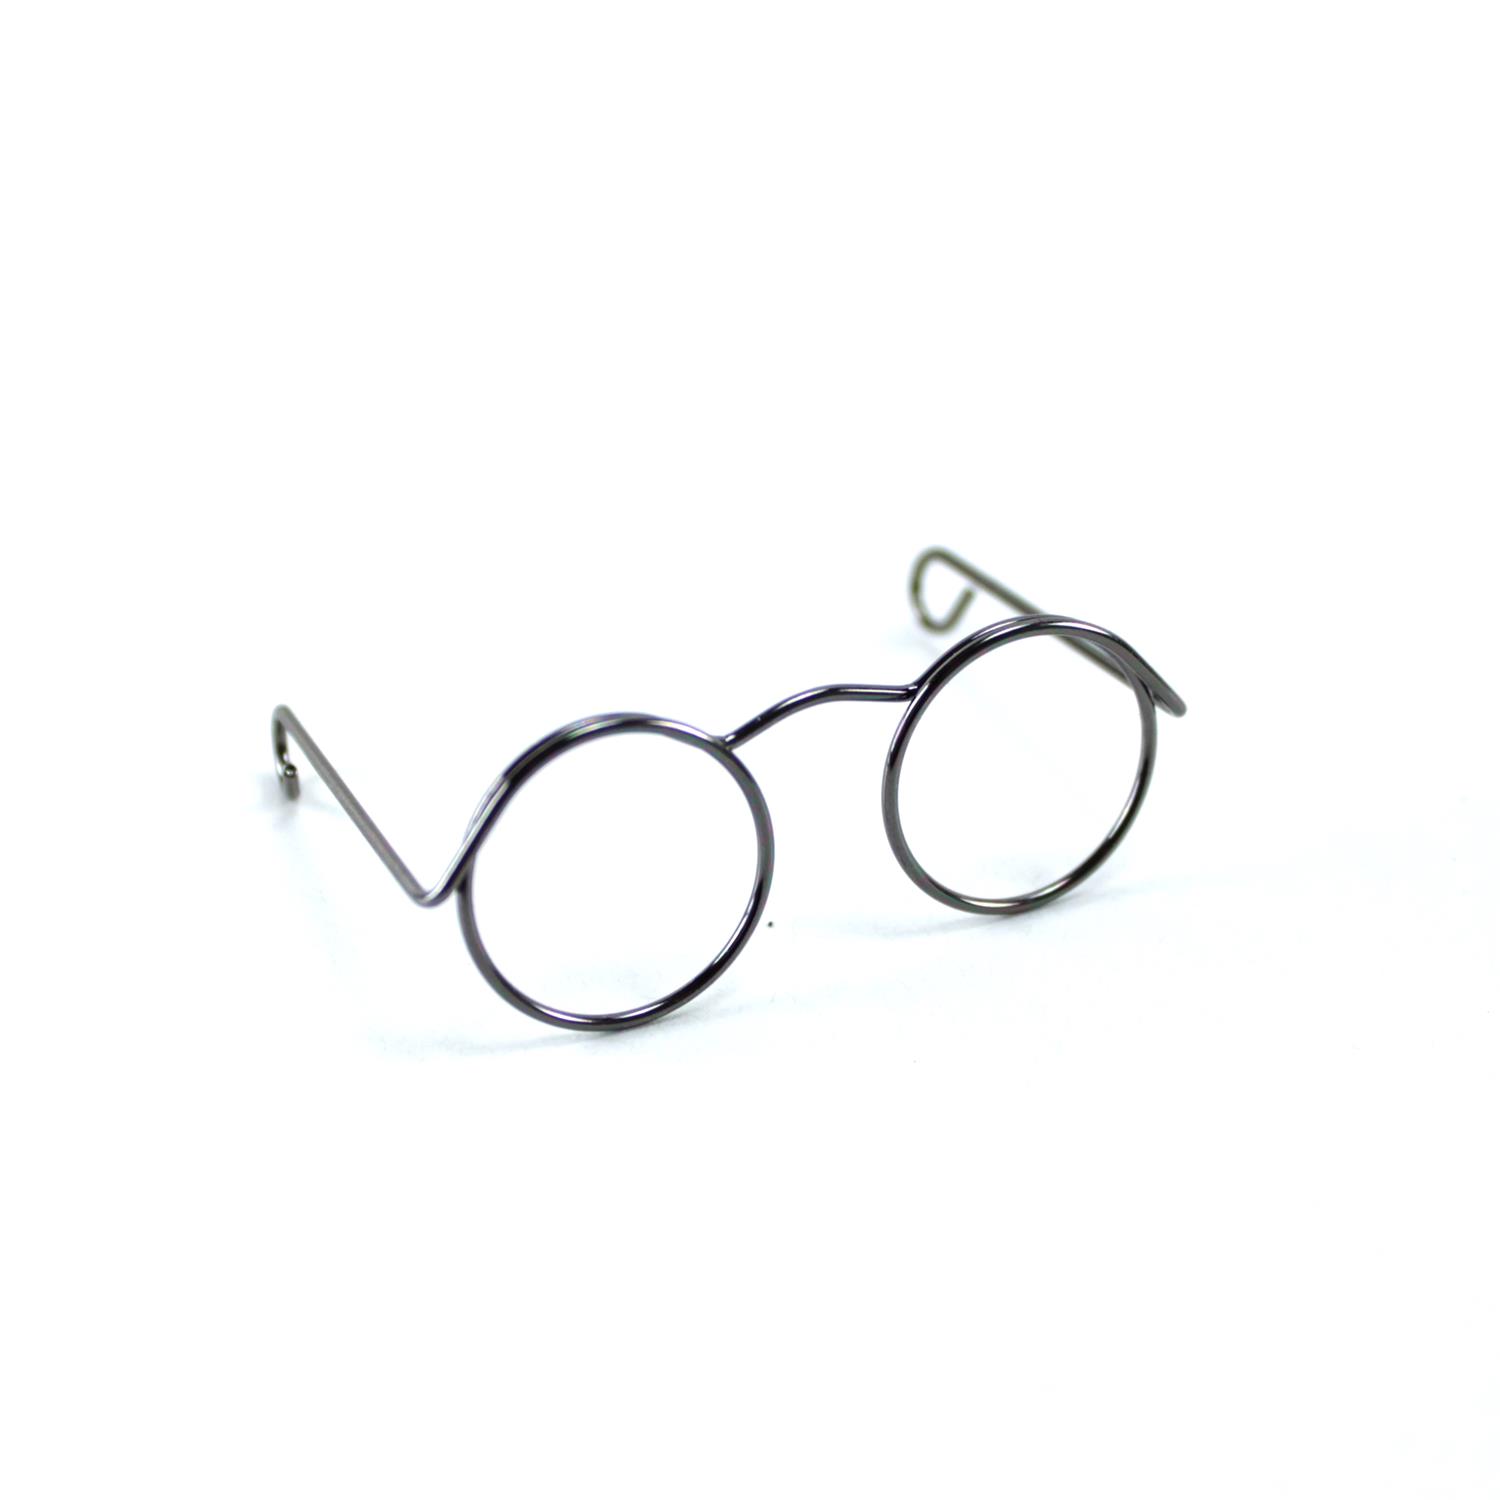 Brille aus Draht altnickel - 5 cm